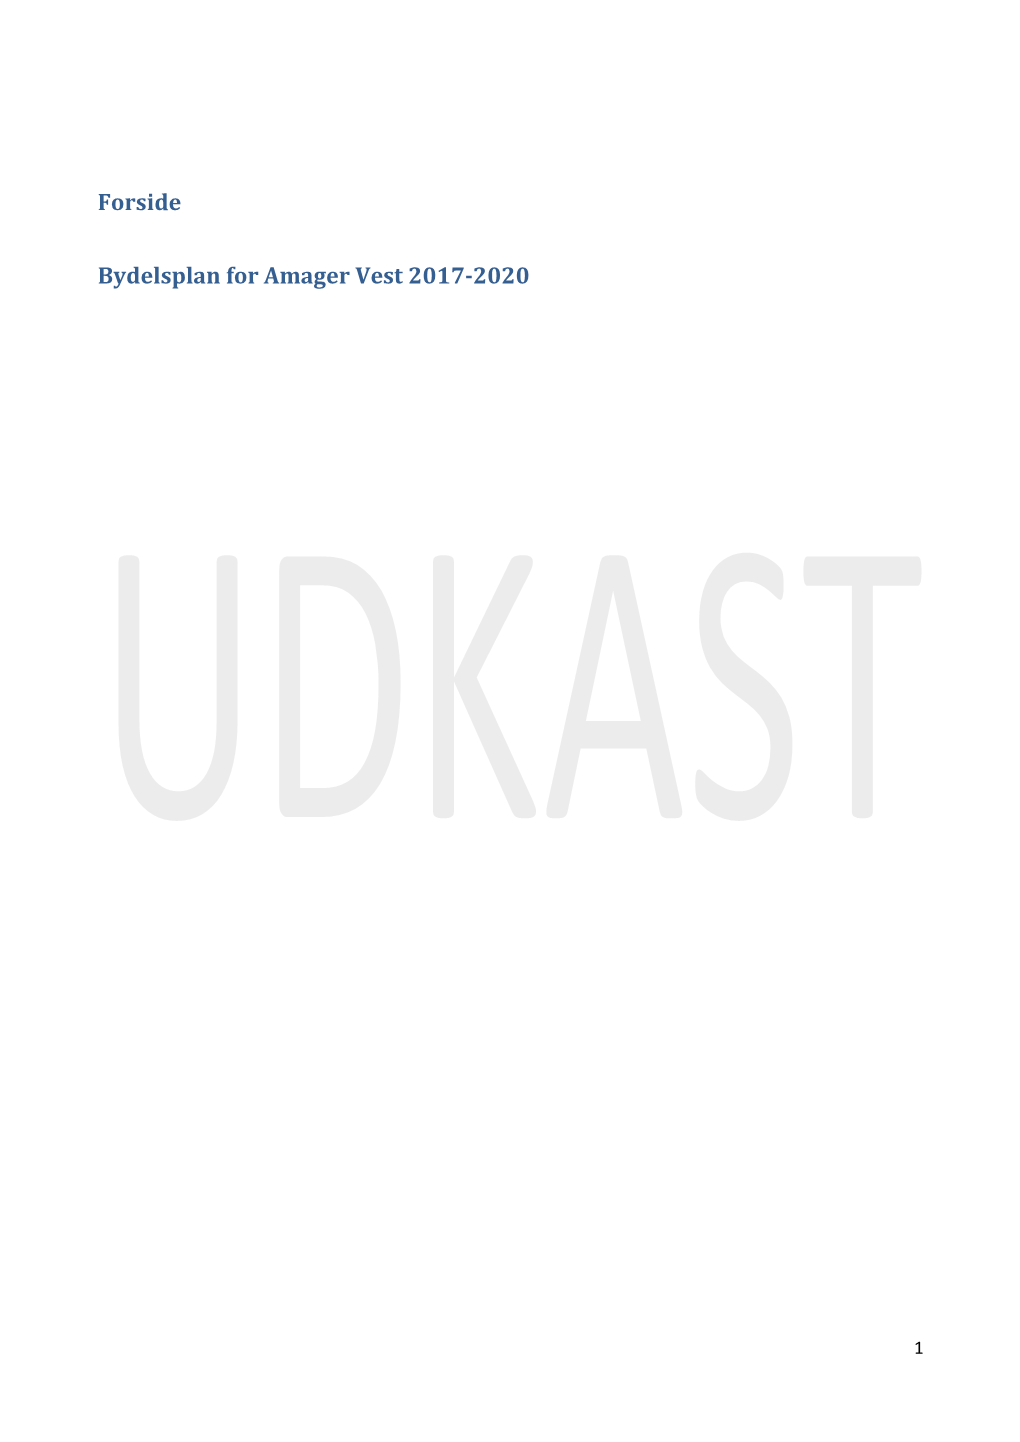 Forside Bydelsplan for Amager Vest 2017-2020